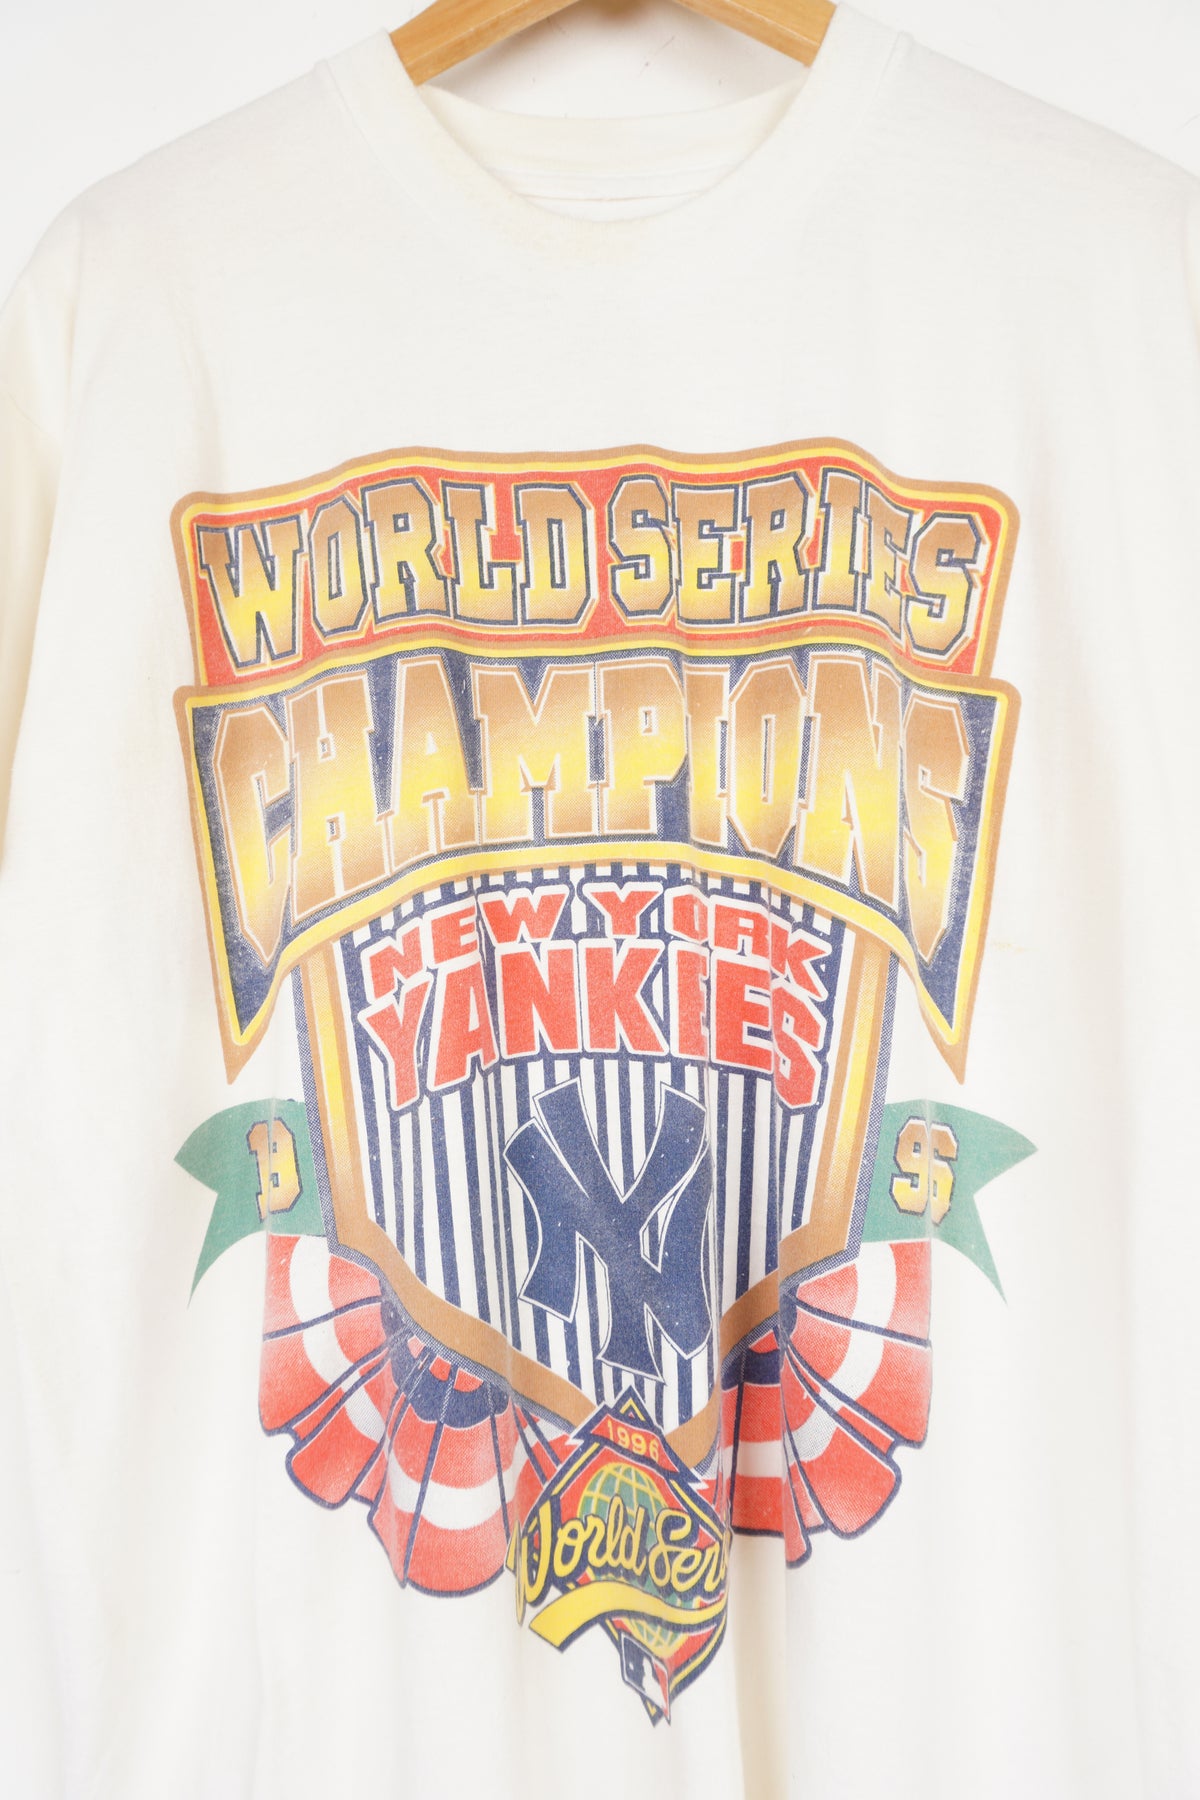 NY Yankees 1996 World Series Tee-Shirt